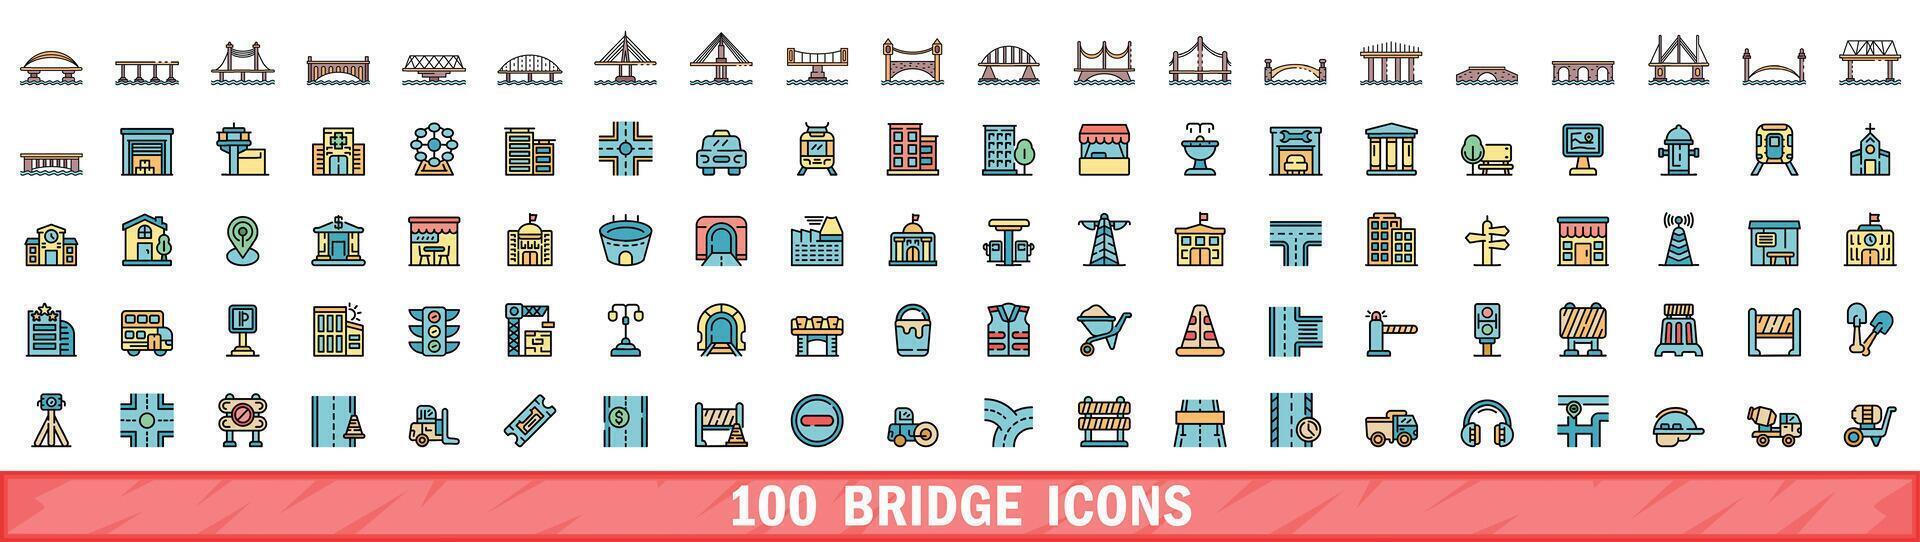 100 bridge icons set, color line style vector